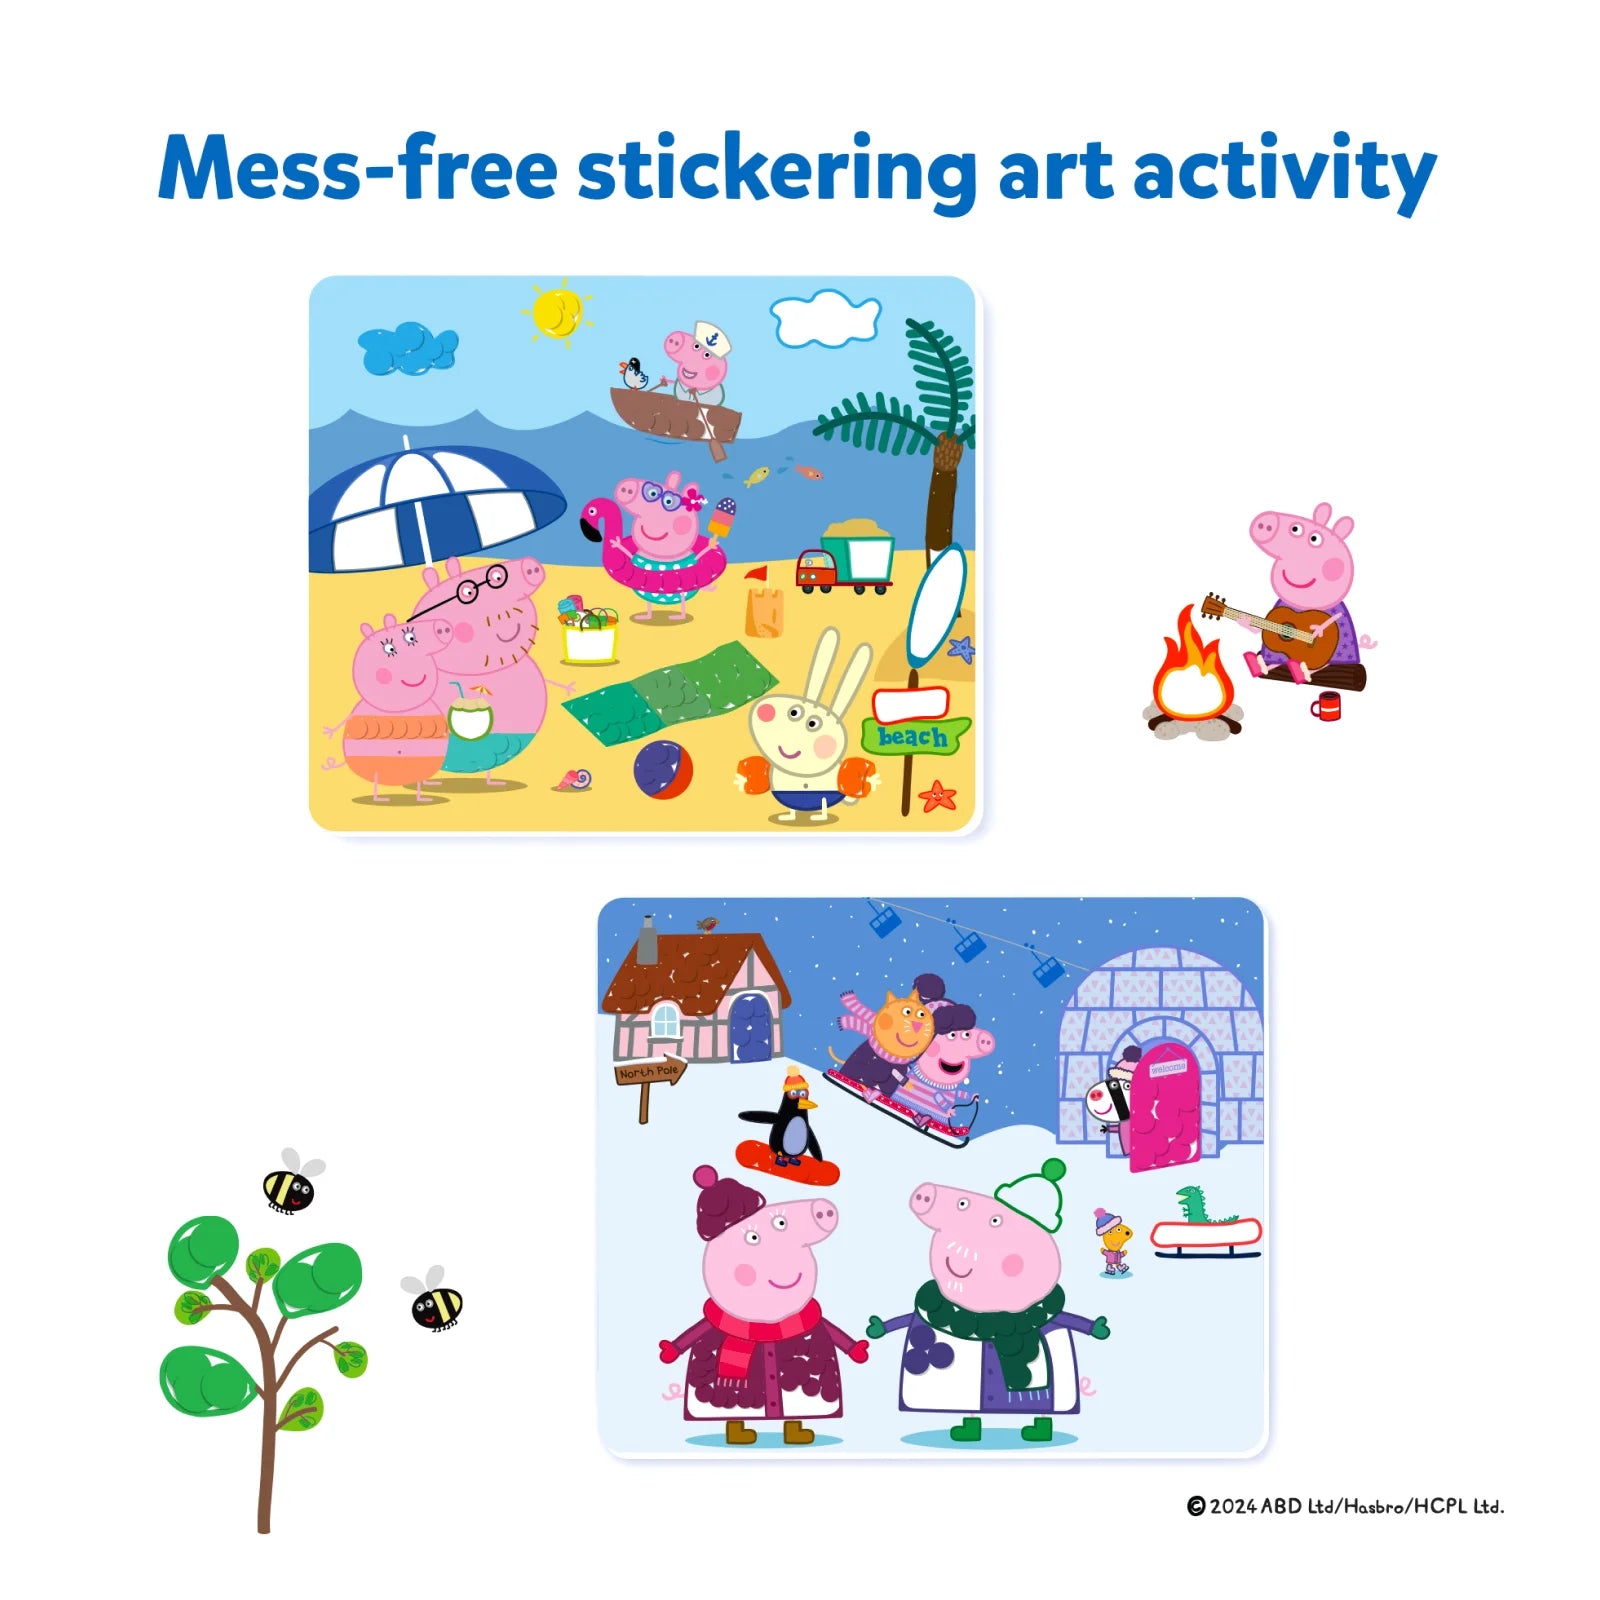 Dot it! - Peppa Pig | No Mess Sticker Art (ages 3-7)